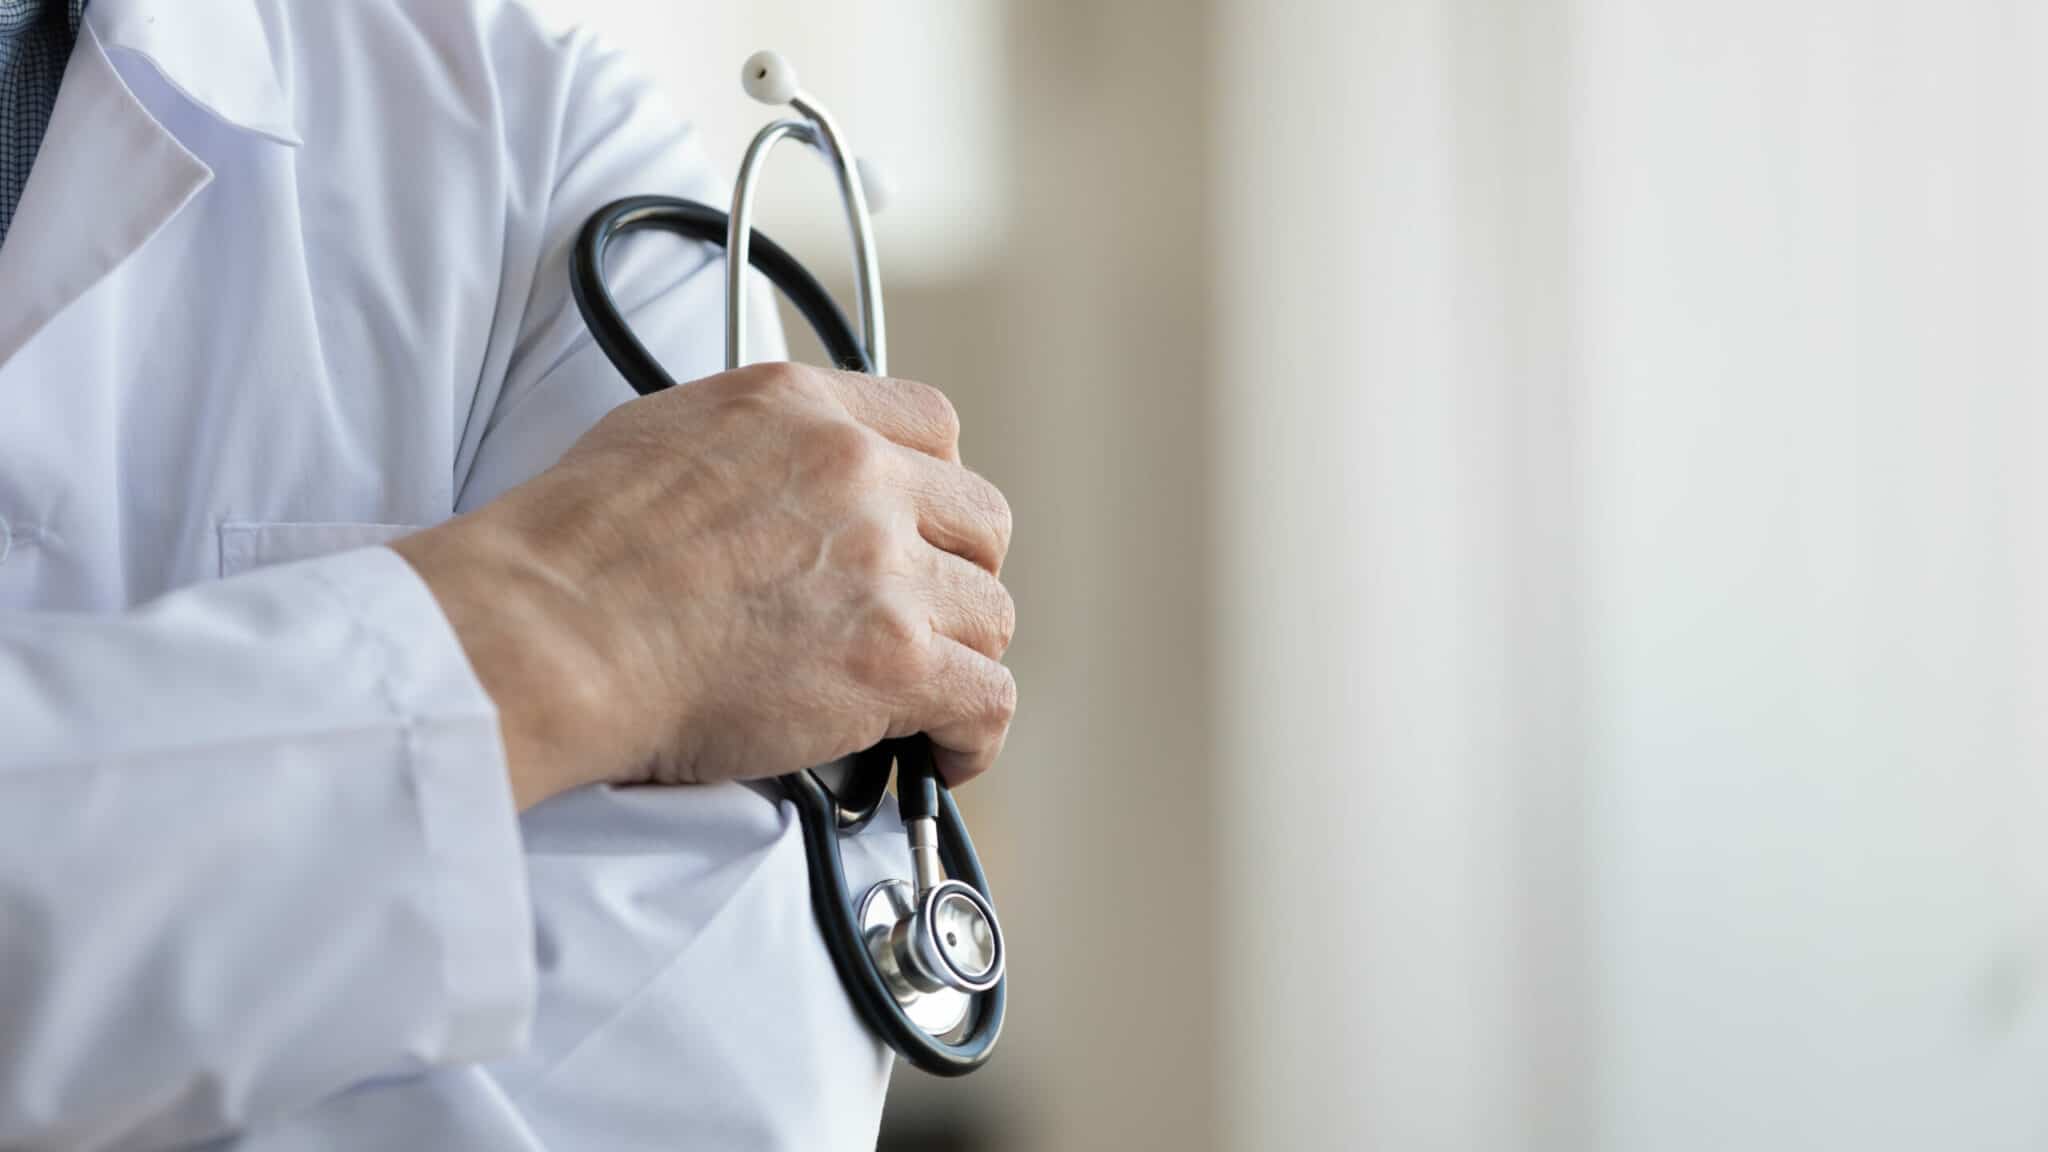 Médecin généraliste masculin et professionnel portant un uniforme blanc tenant un stéthoscope à la main. Vue en gros plan.